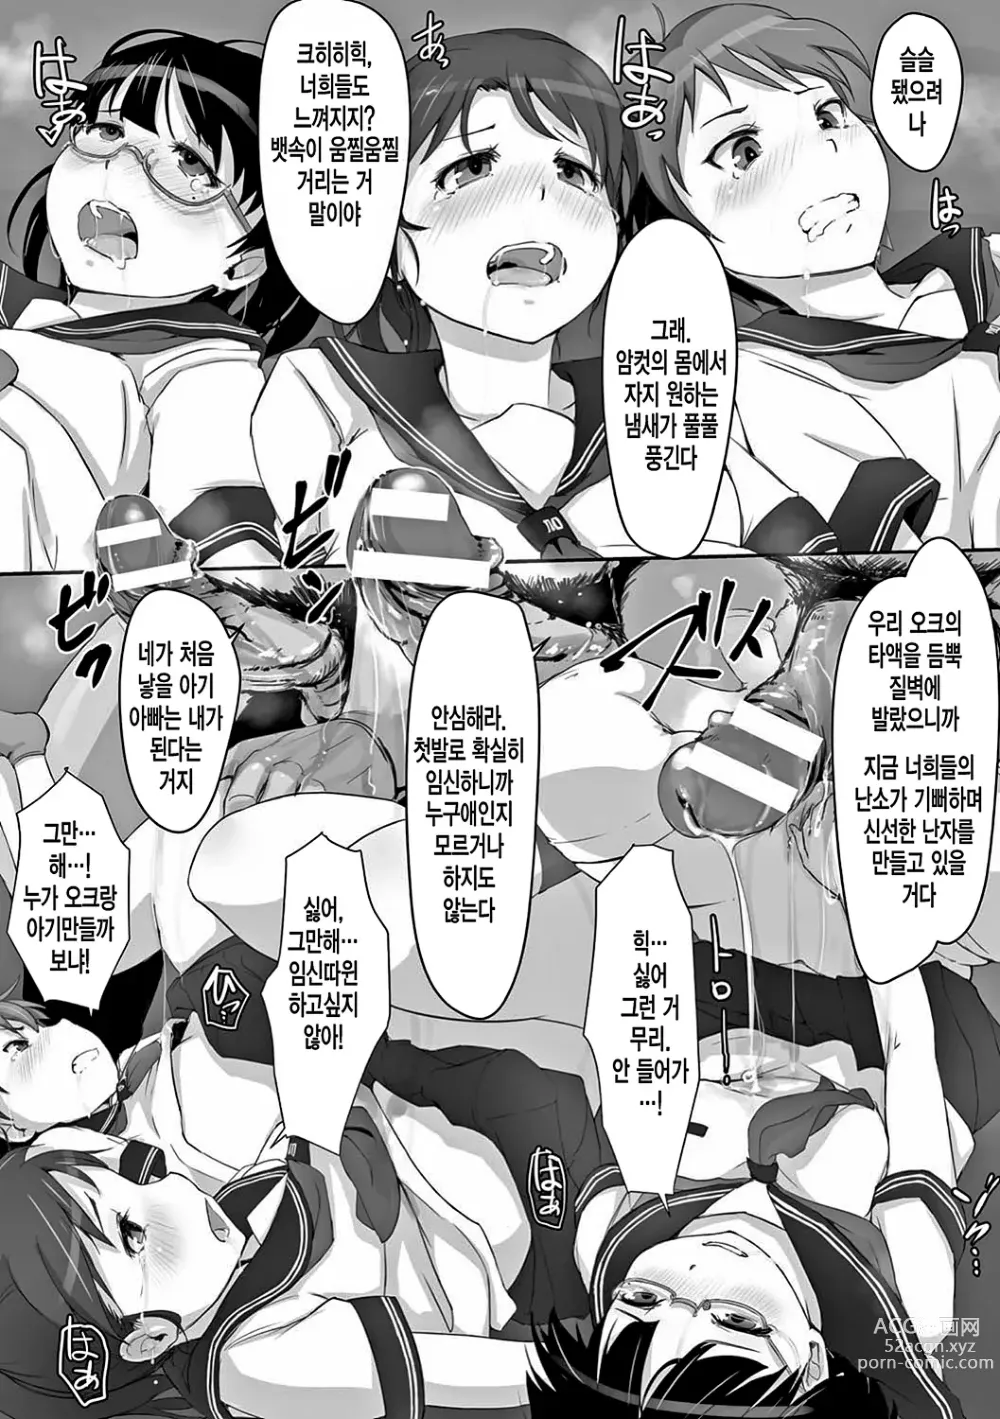 Page 16 of manga 더러운 정자로 자궁이 빵빵!